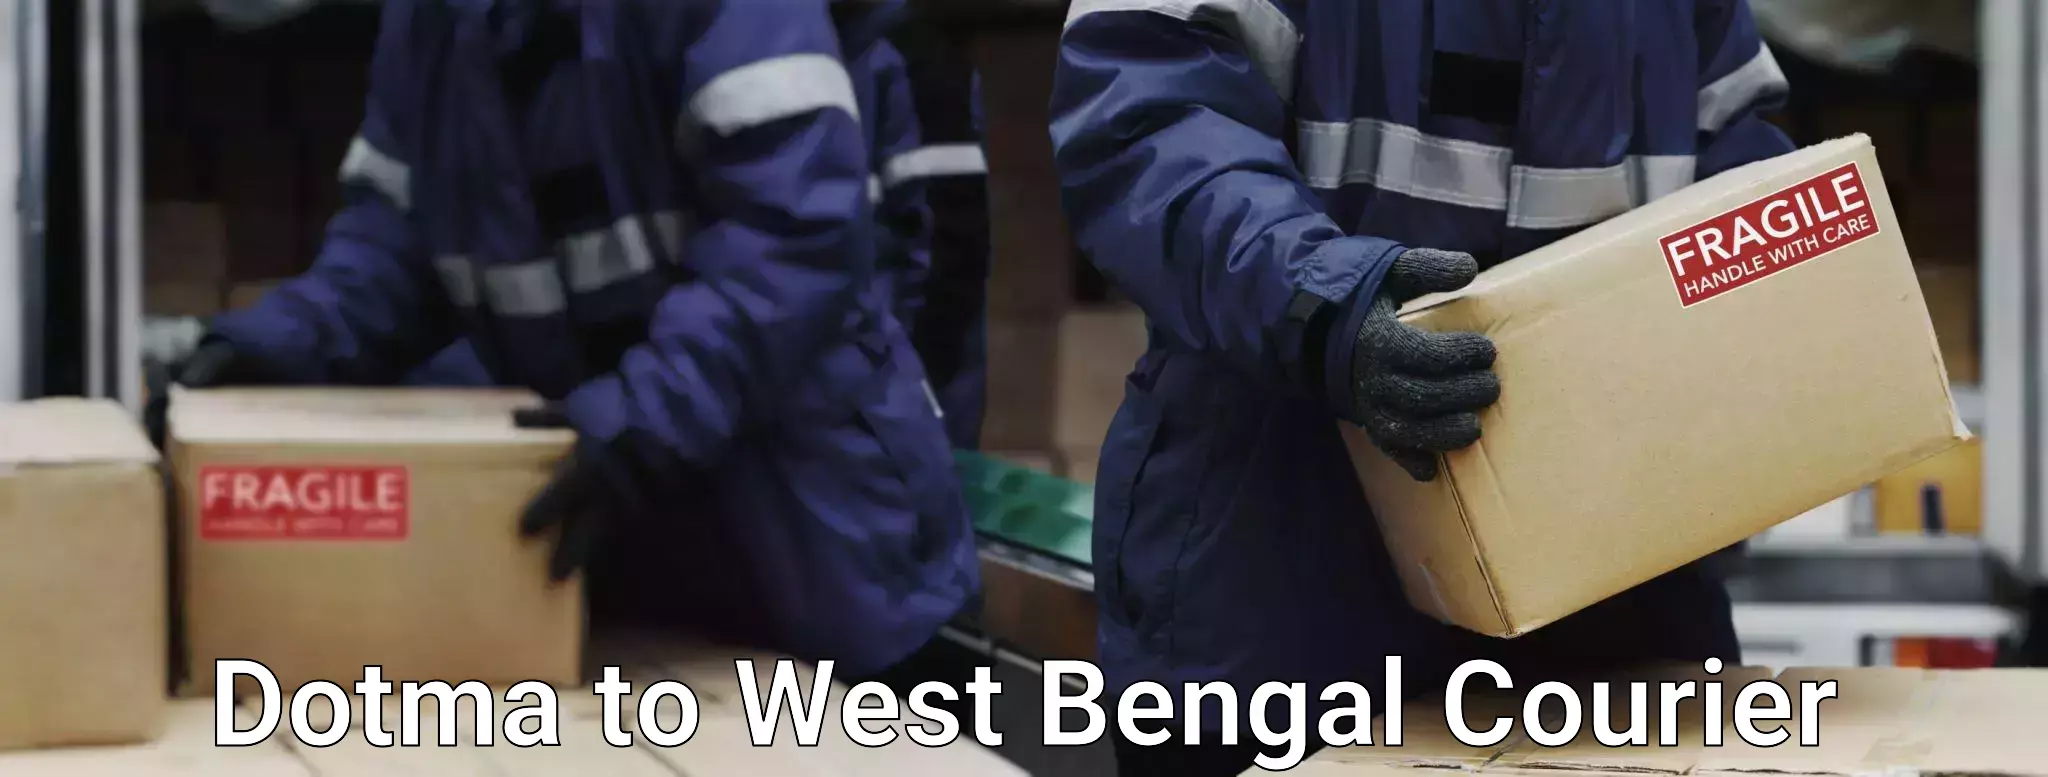 Door-to-door baggage service Dotma to West Bengal